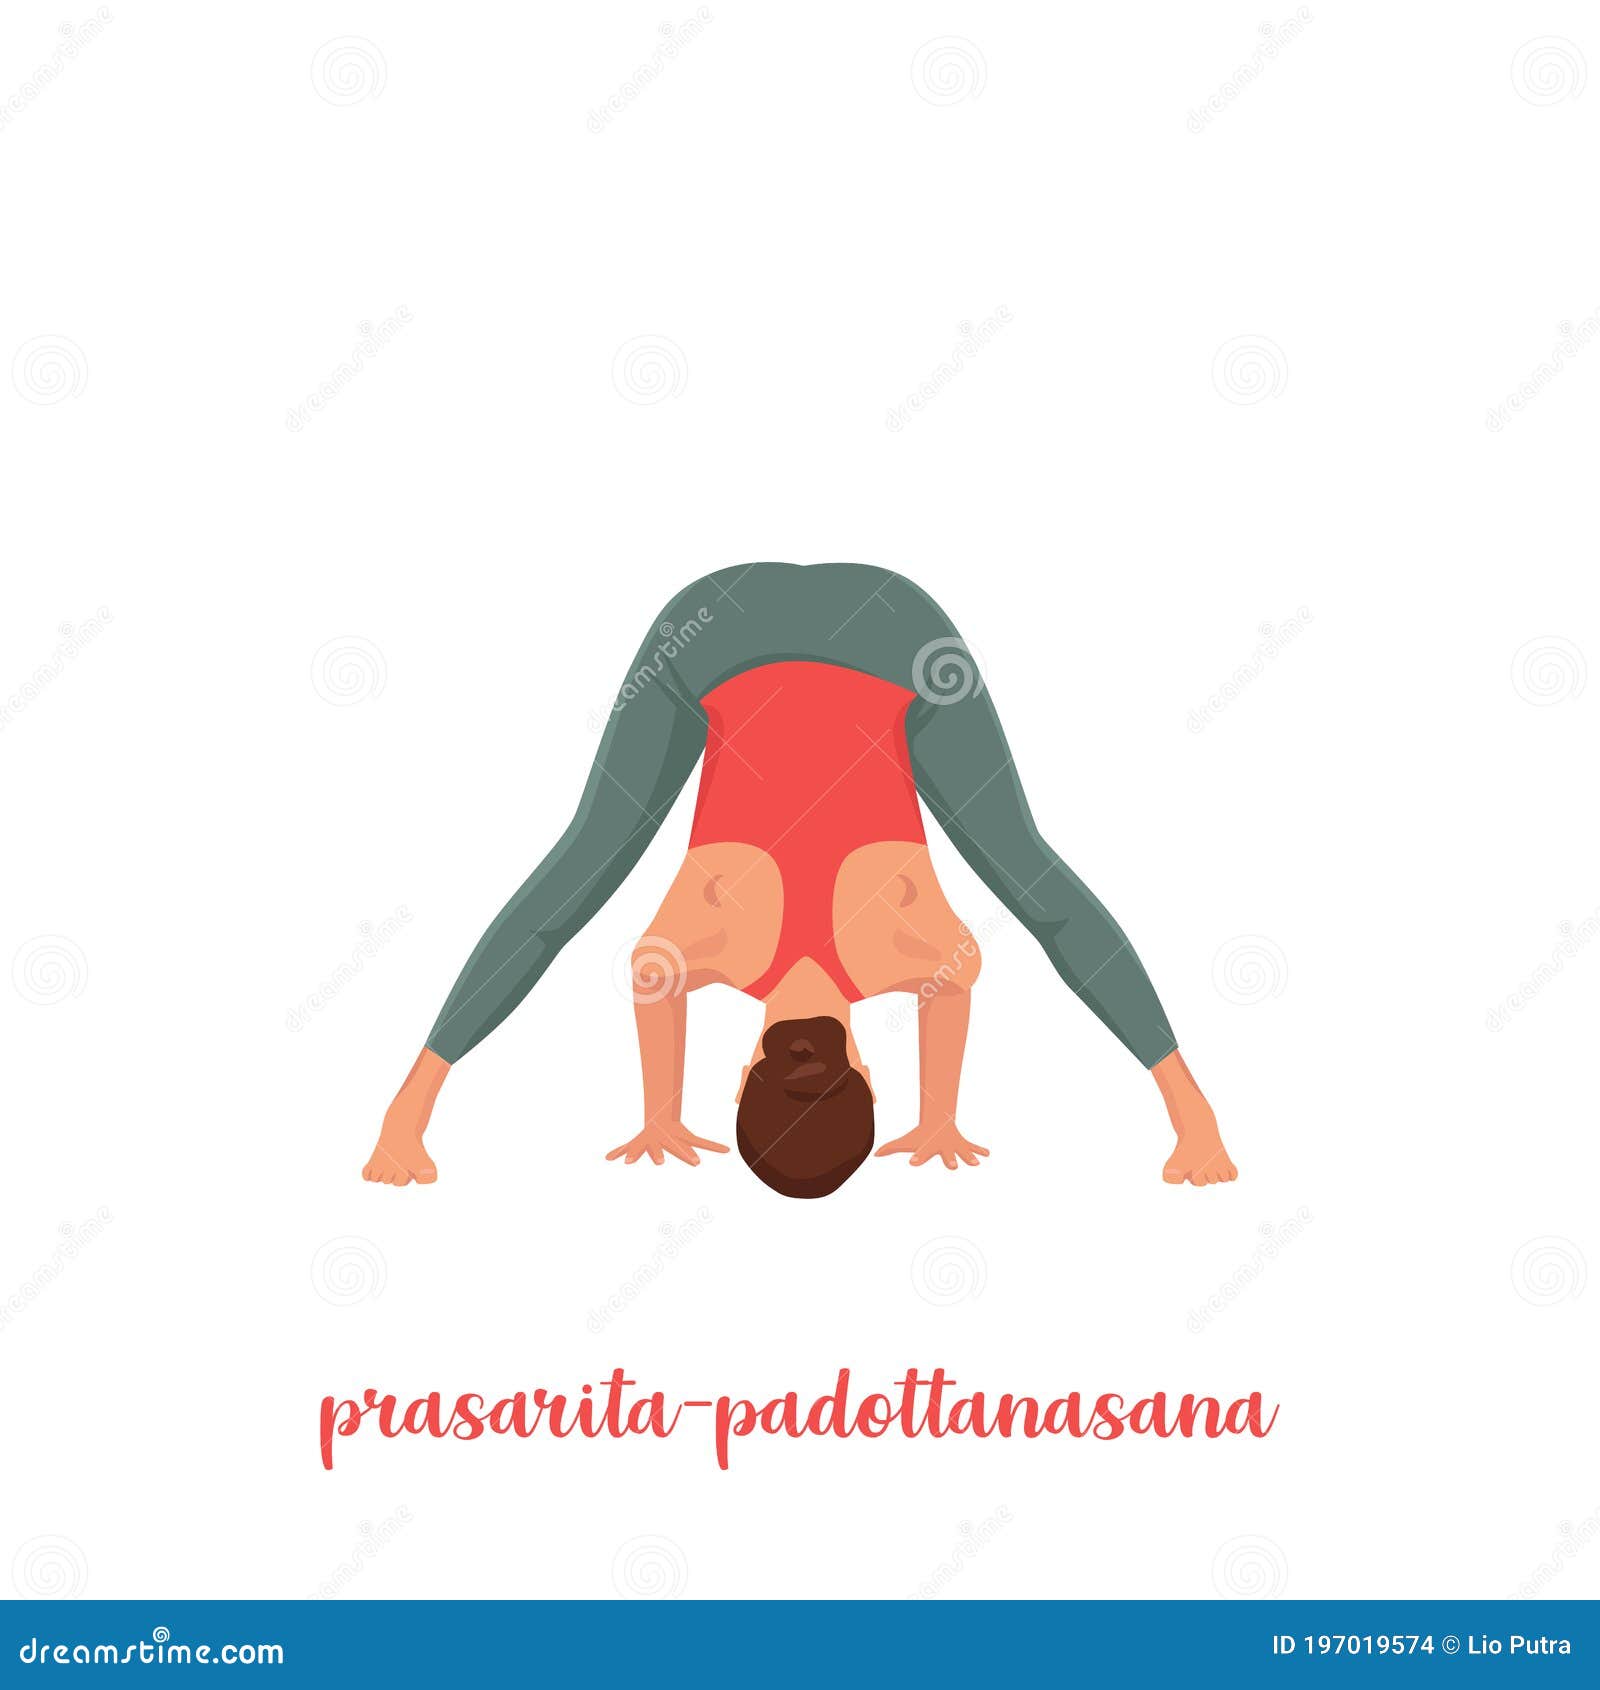 Yoga Pose: Wide Legged Forward Bend Twist